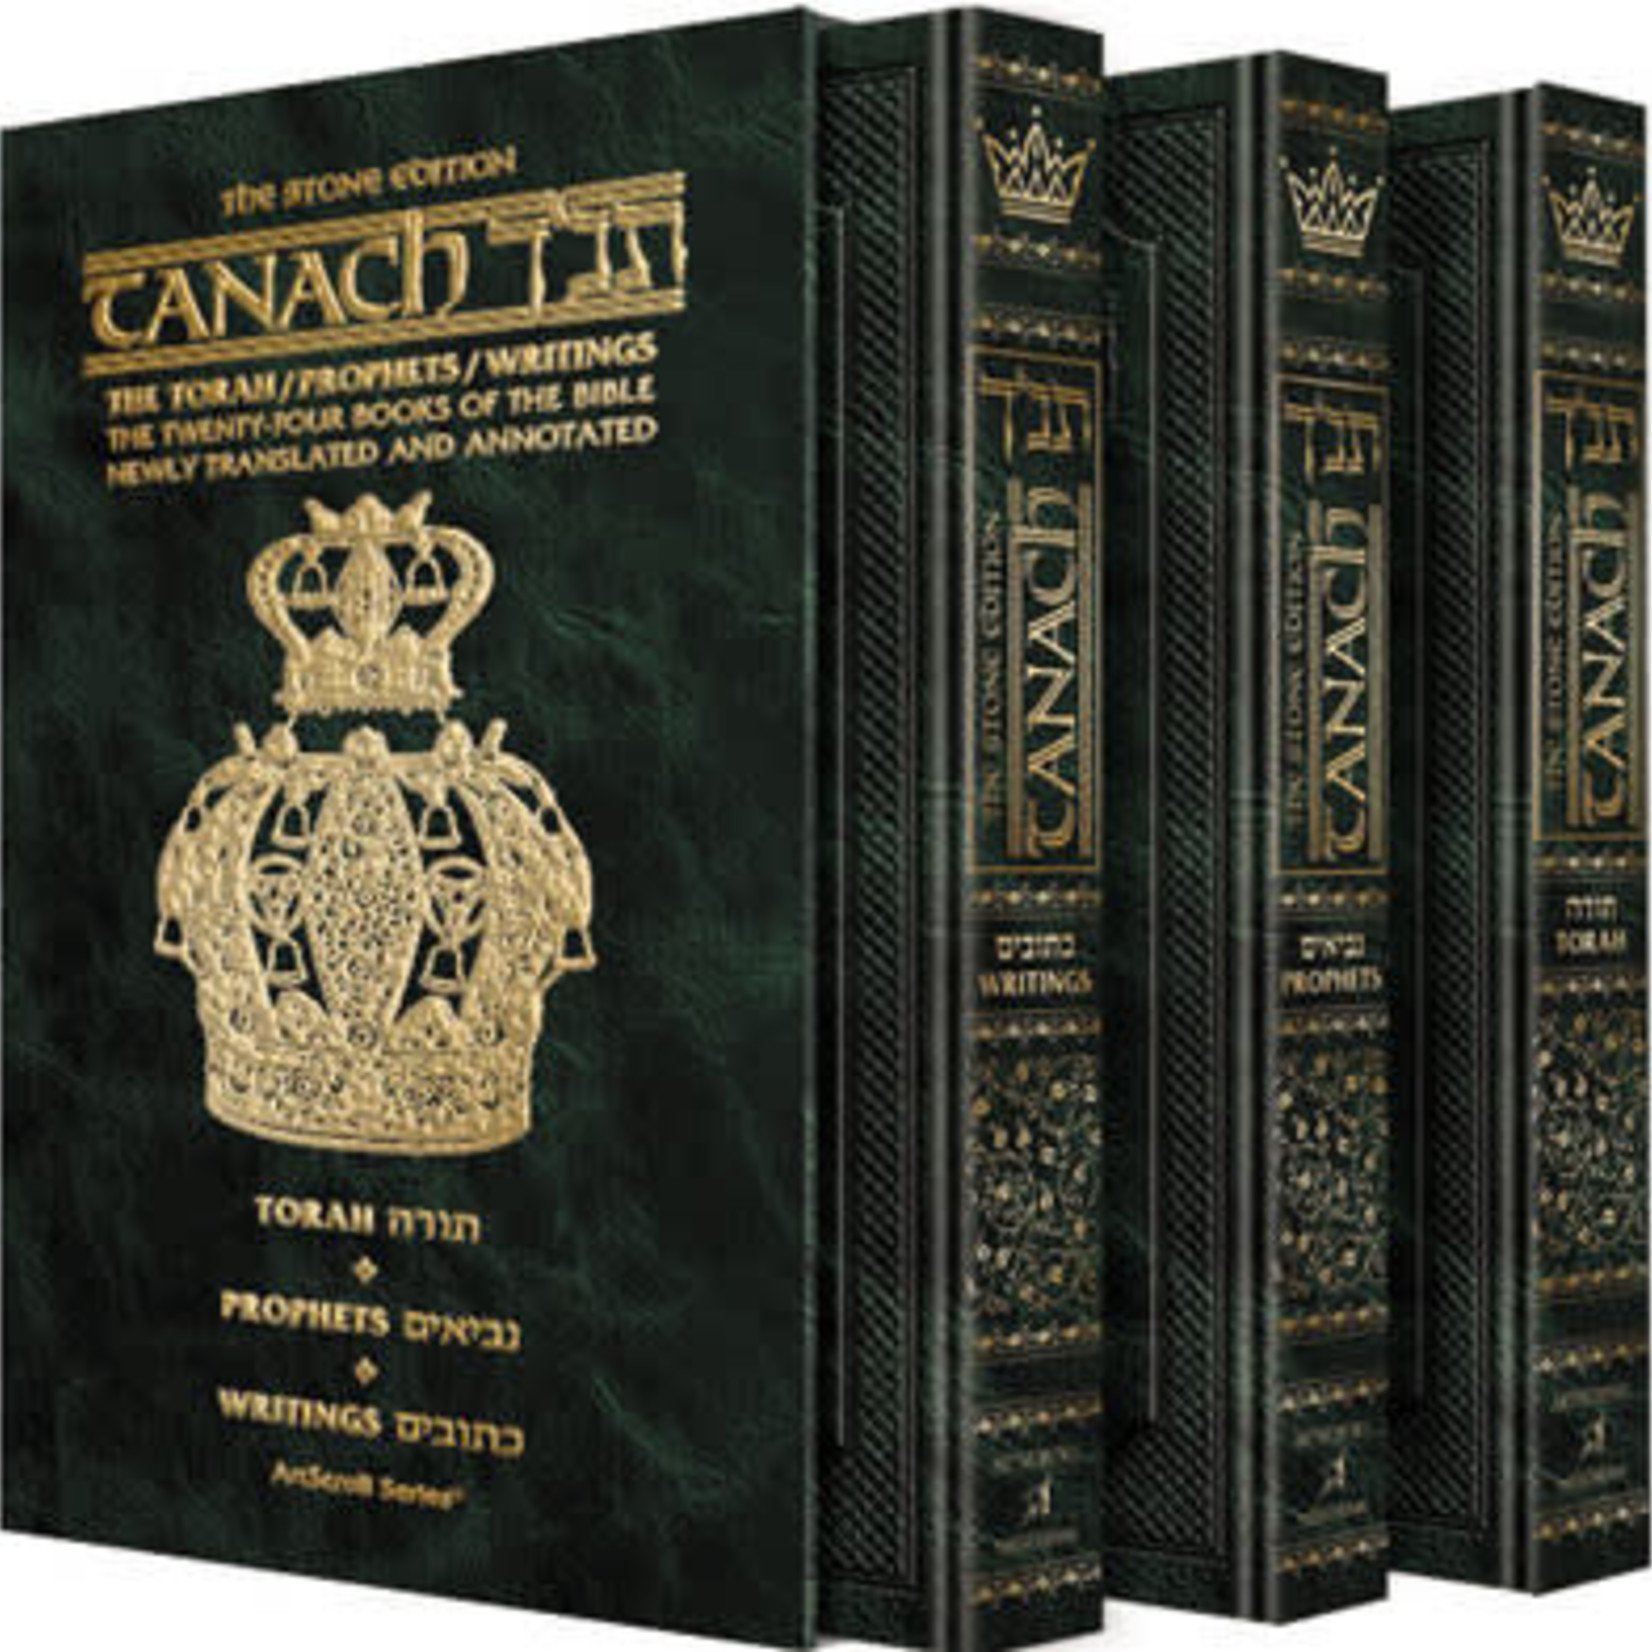 Stone Edition Tanach - Pocket Size Edition - Three Volume Slipcased Set [Pocket 3 Volume Set]